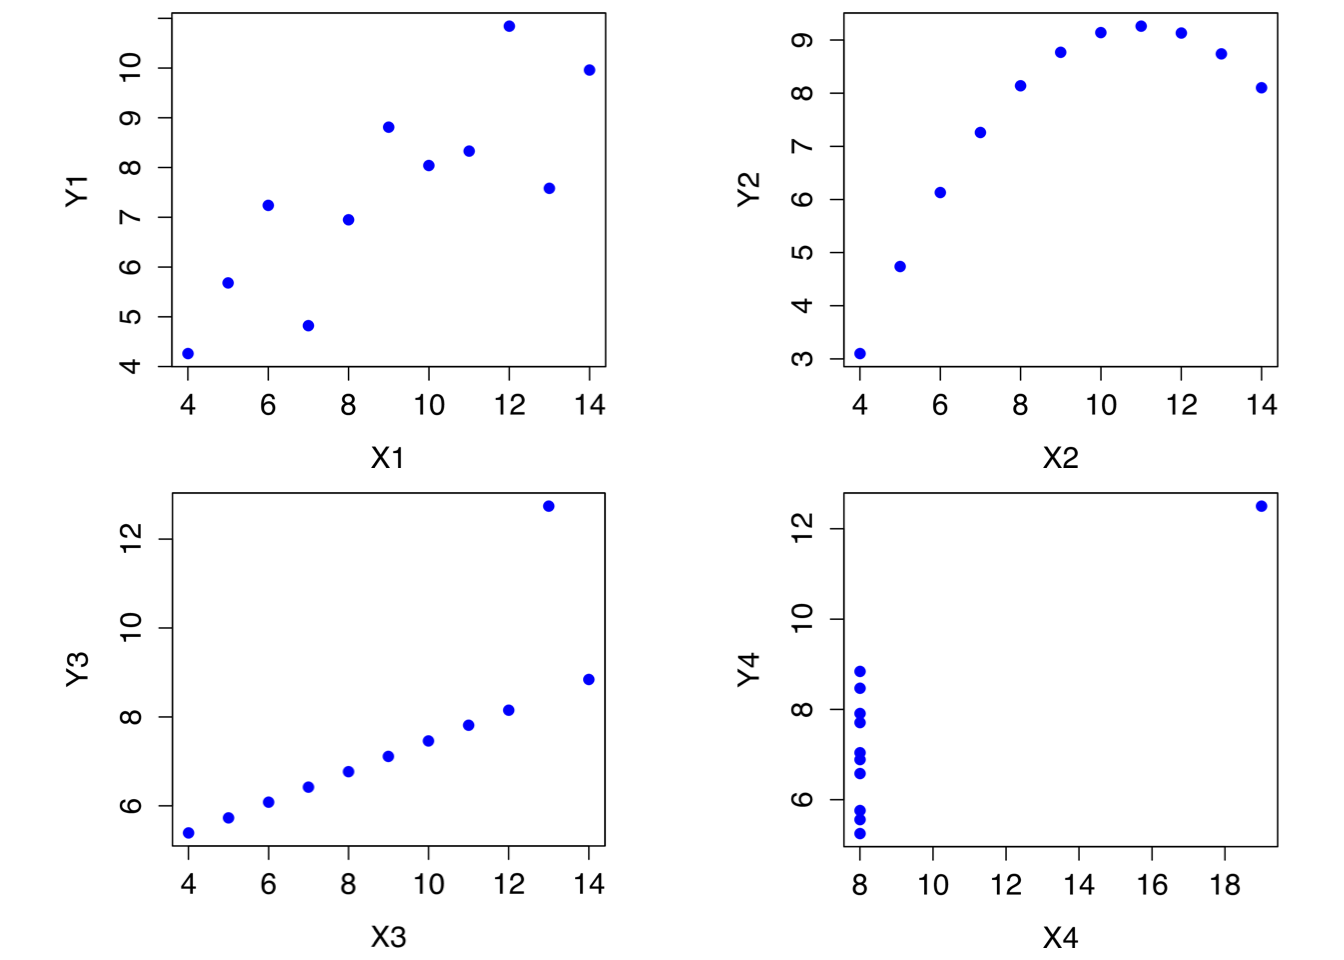 アンスコムの例。 これらの4つのデータはどれもピアソンの相関係数は\(r=.816\)であるが，質的には互いに異なっている。